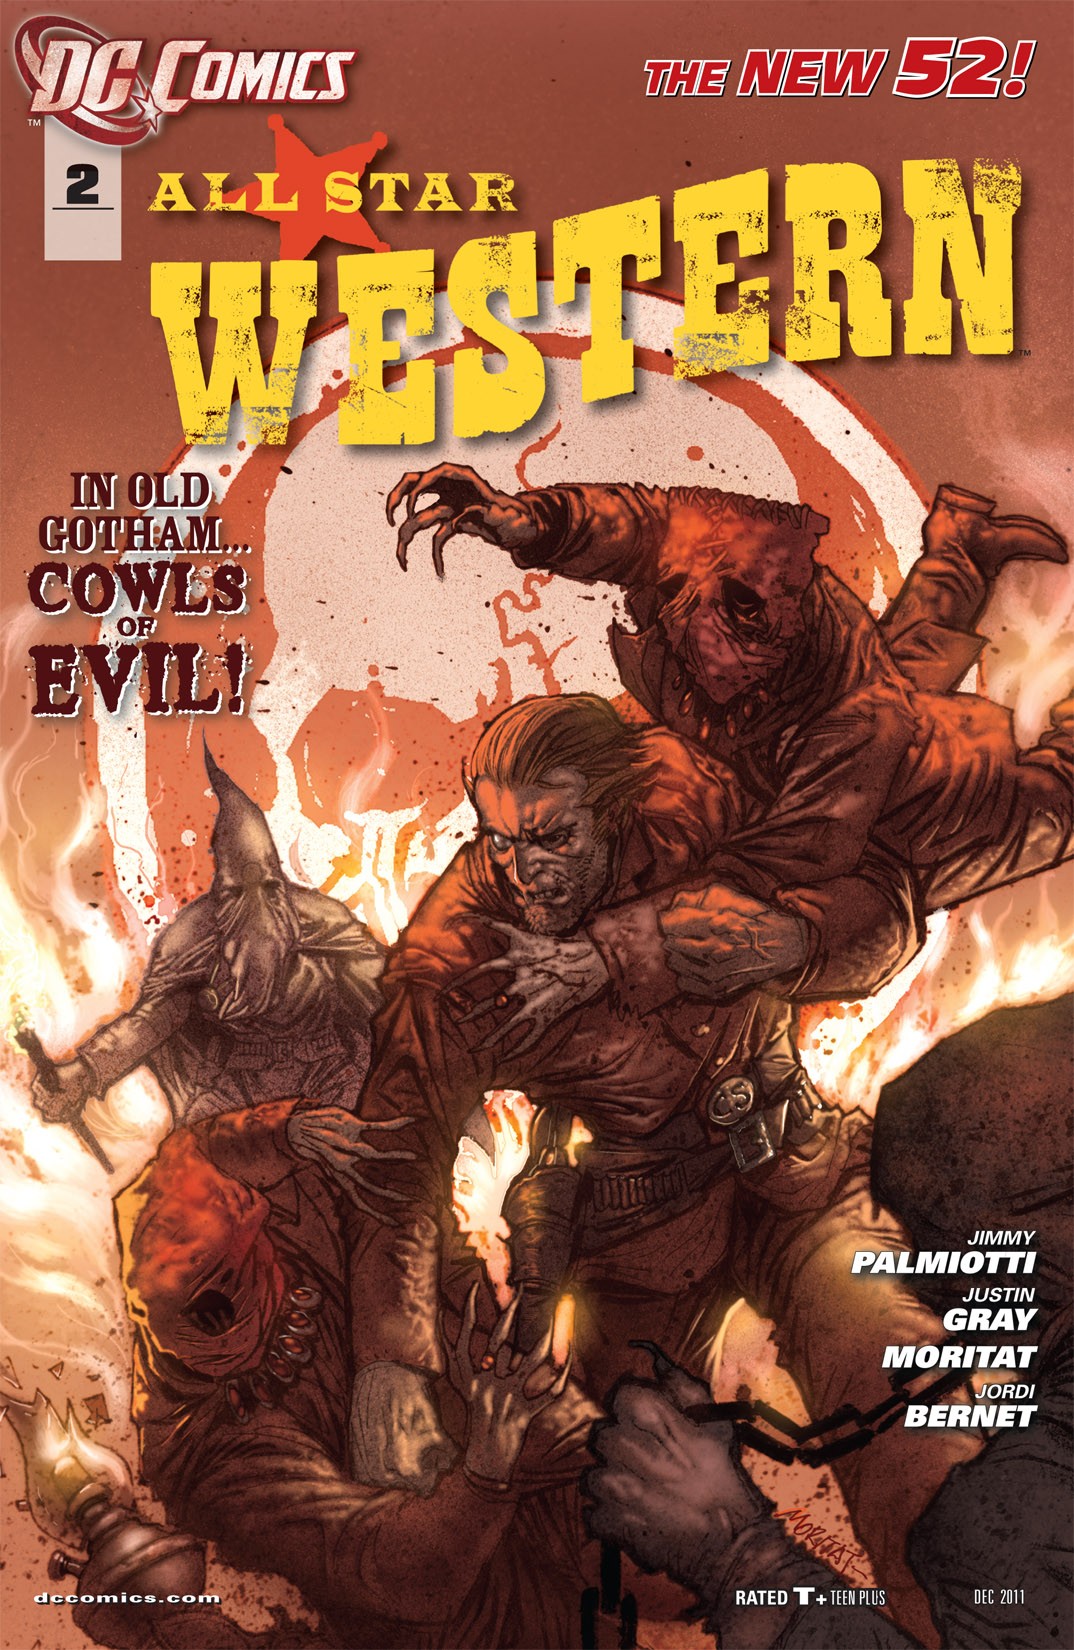 All-Star Western Vol. 3 #2